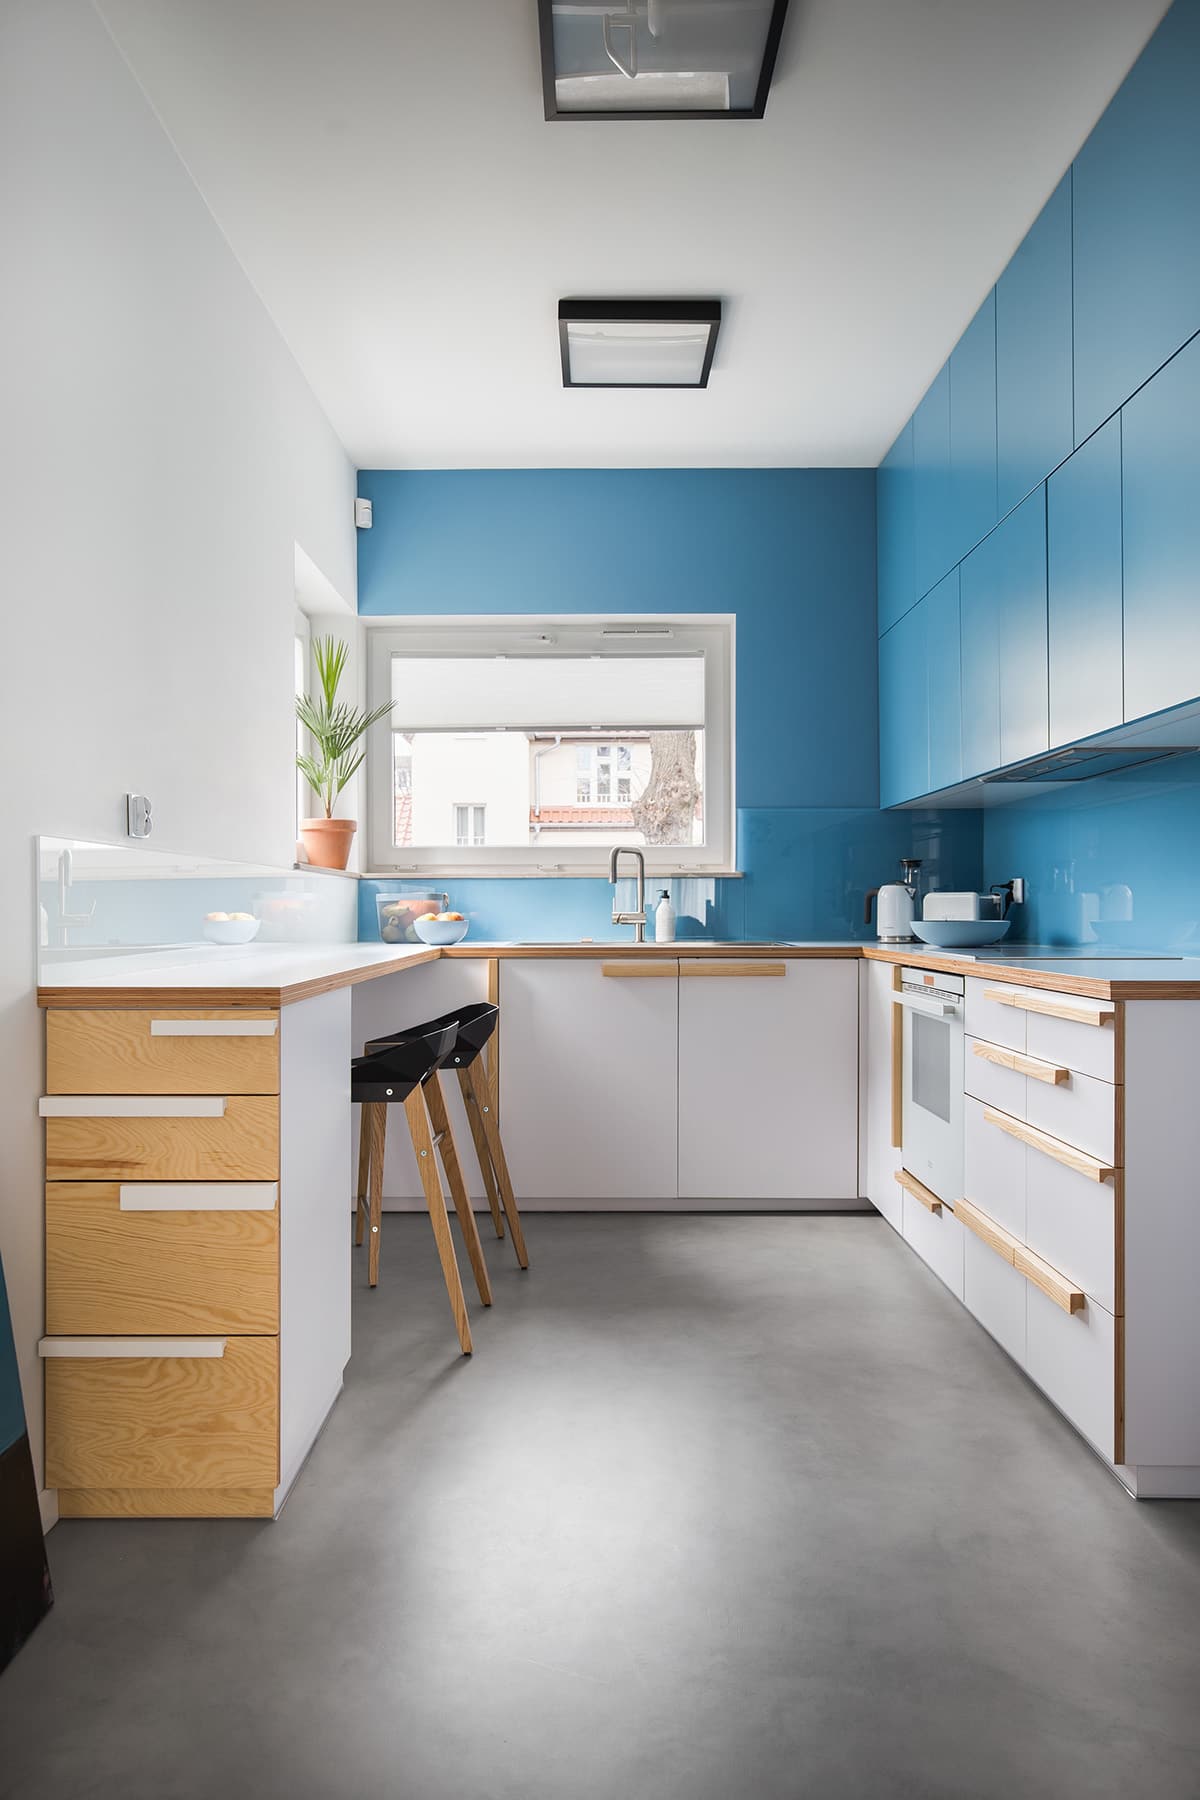 Современная бело-голубая узкая кухня в стиле минимализм, где главный акцент сделан на простоту и выразительность